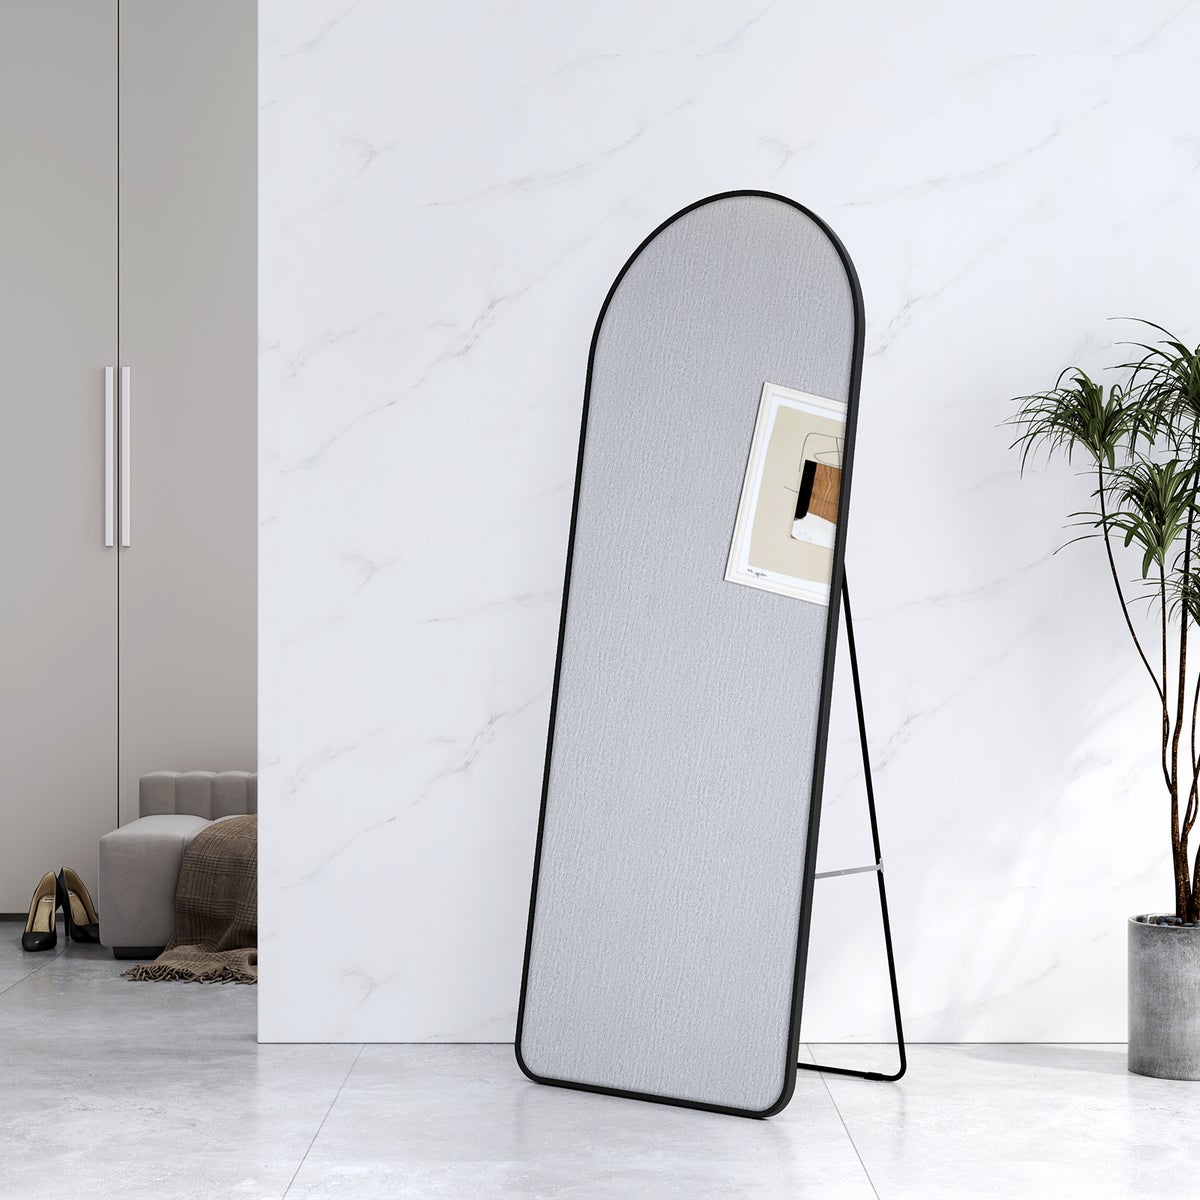 EMKE Bogen Standspiegel Ganzkörperspiegel mit Rahmen aus Aluminiumlegierung für Wohn-,Schlaf-, Aufenthalt und Ankleidezimmer, Schwarz, 160x60cm